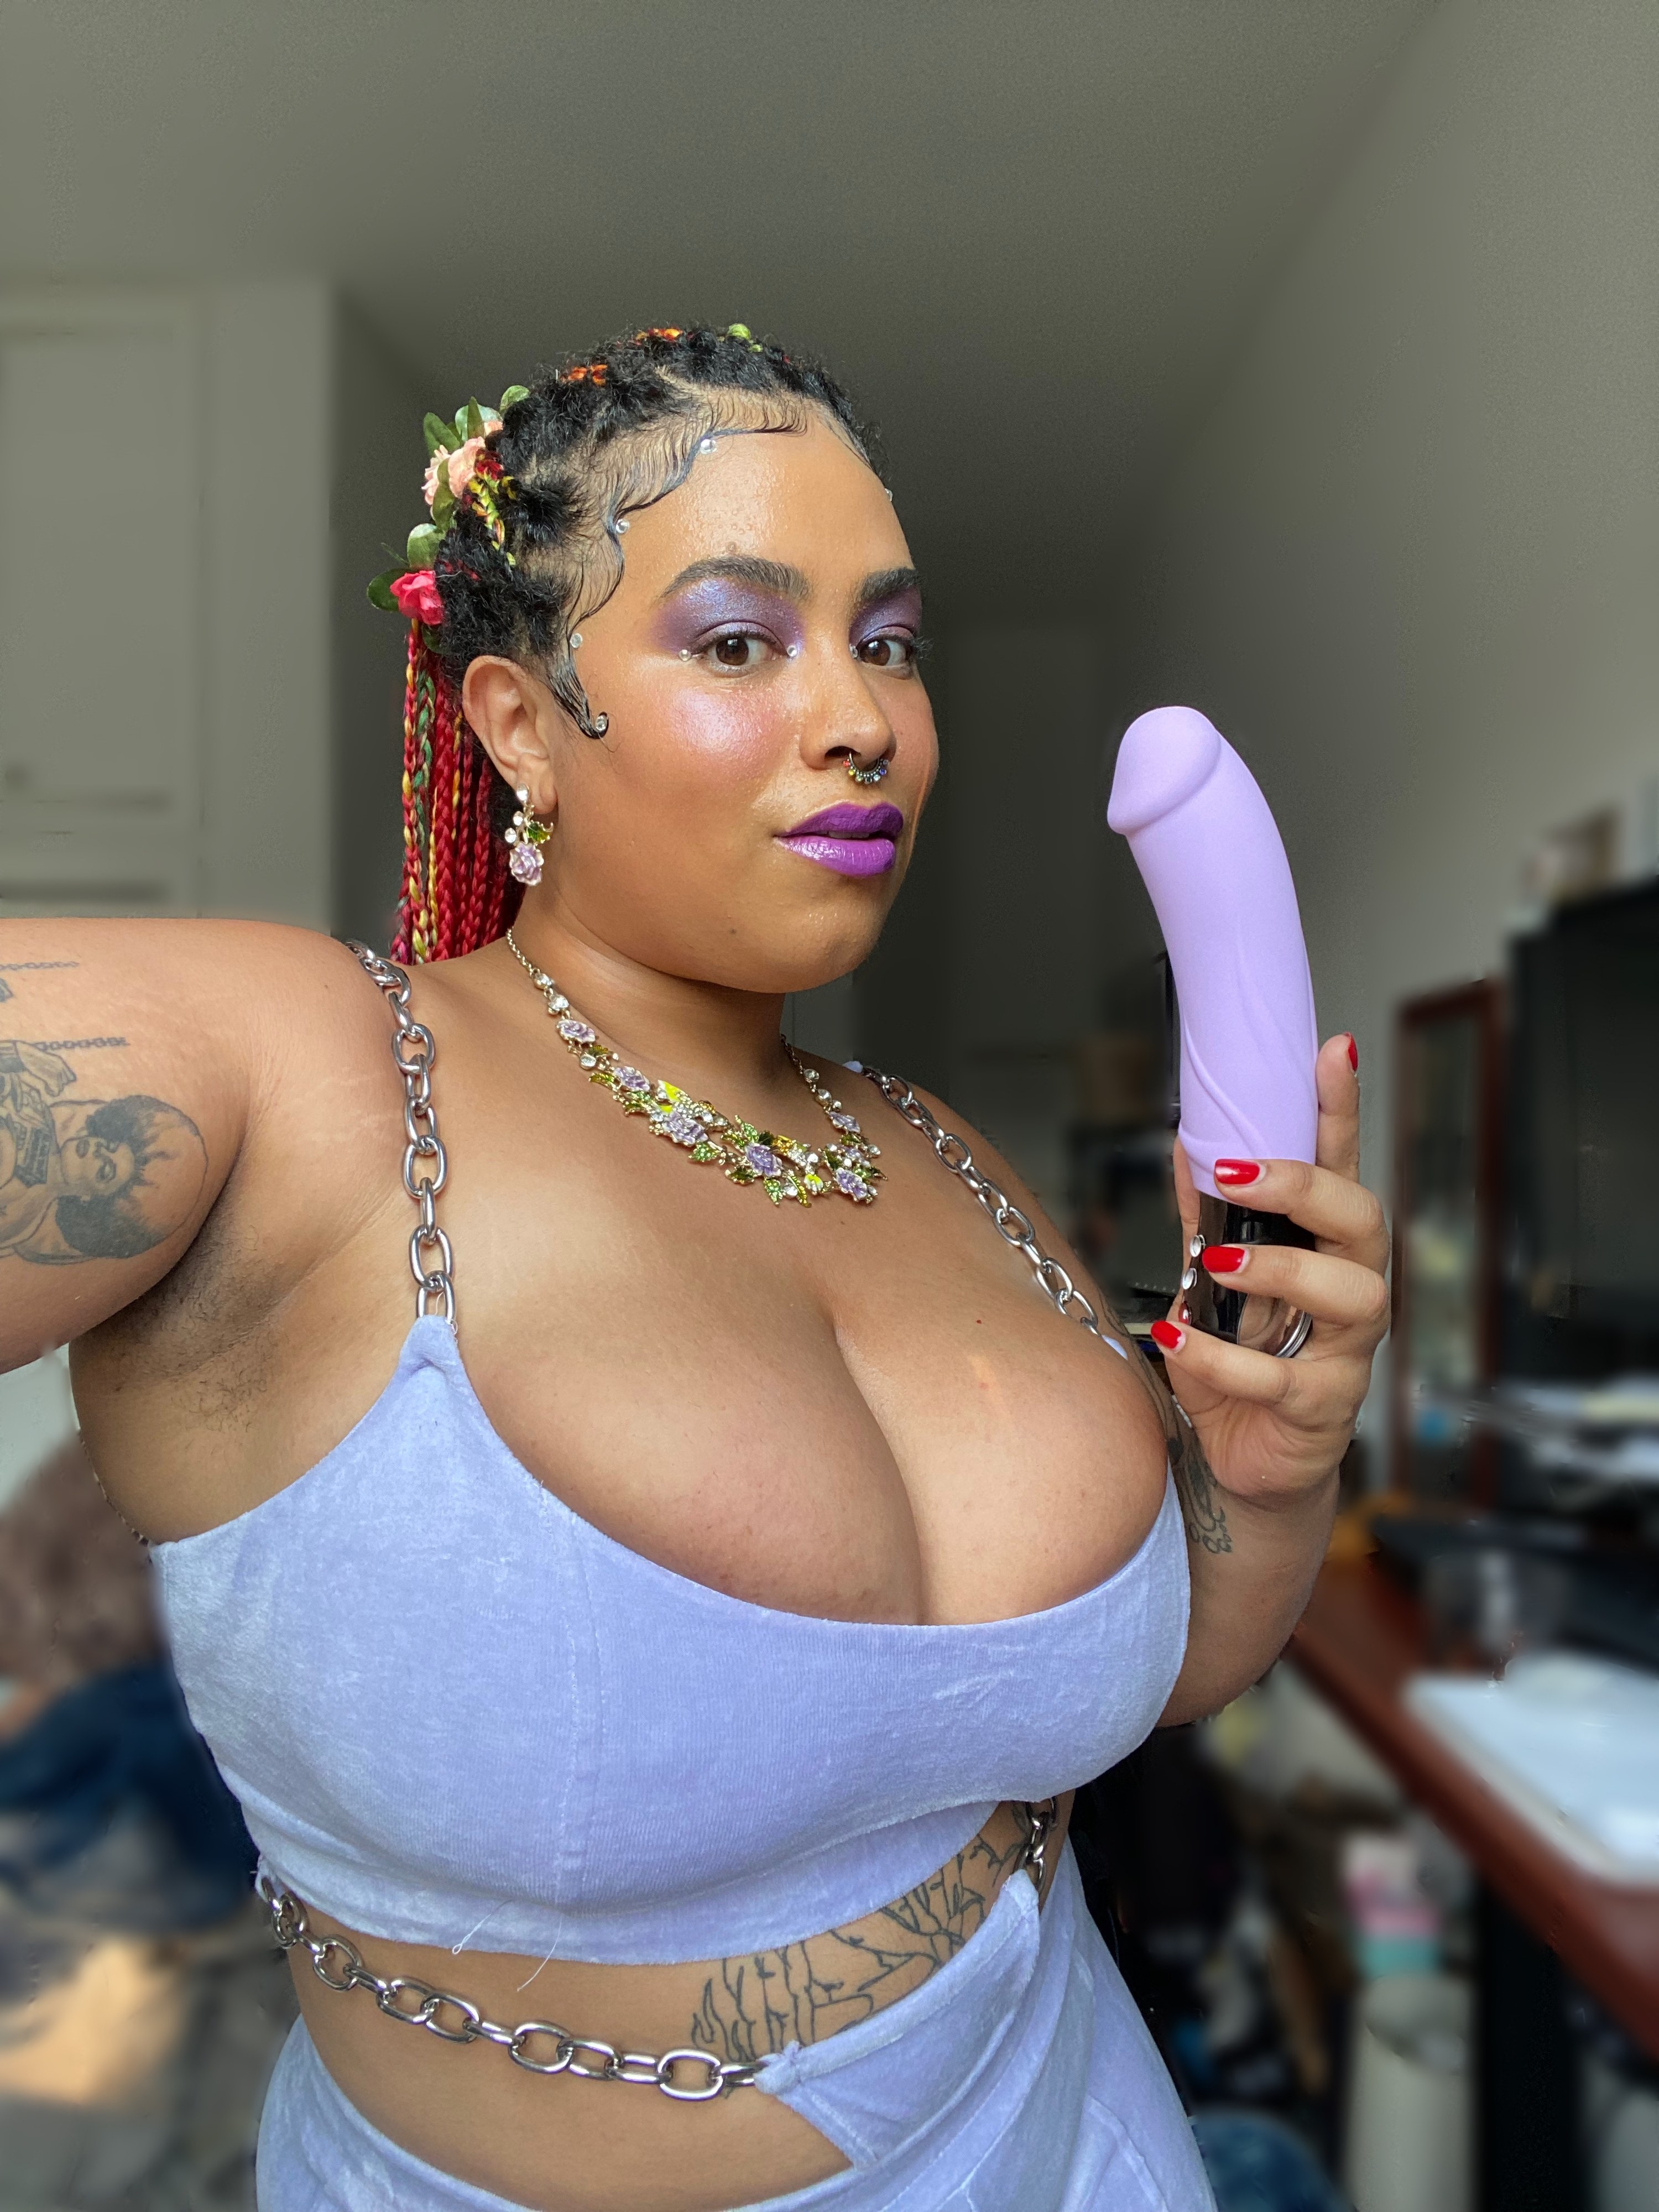 Woman holding purple vibrating dildo